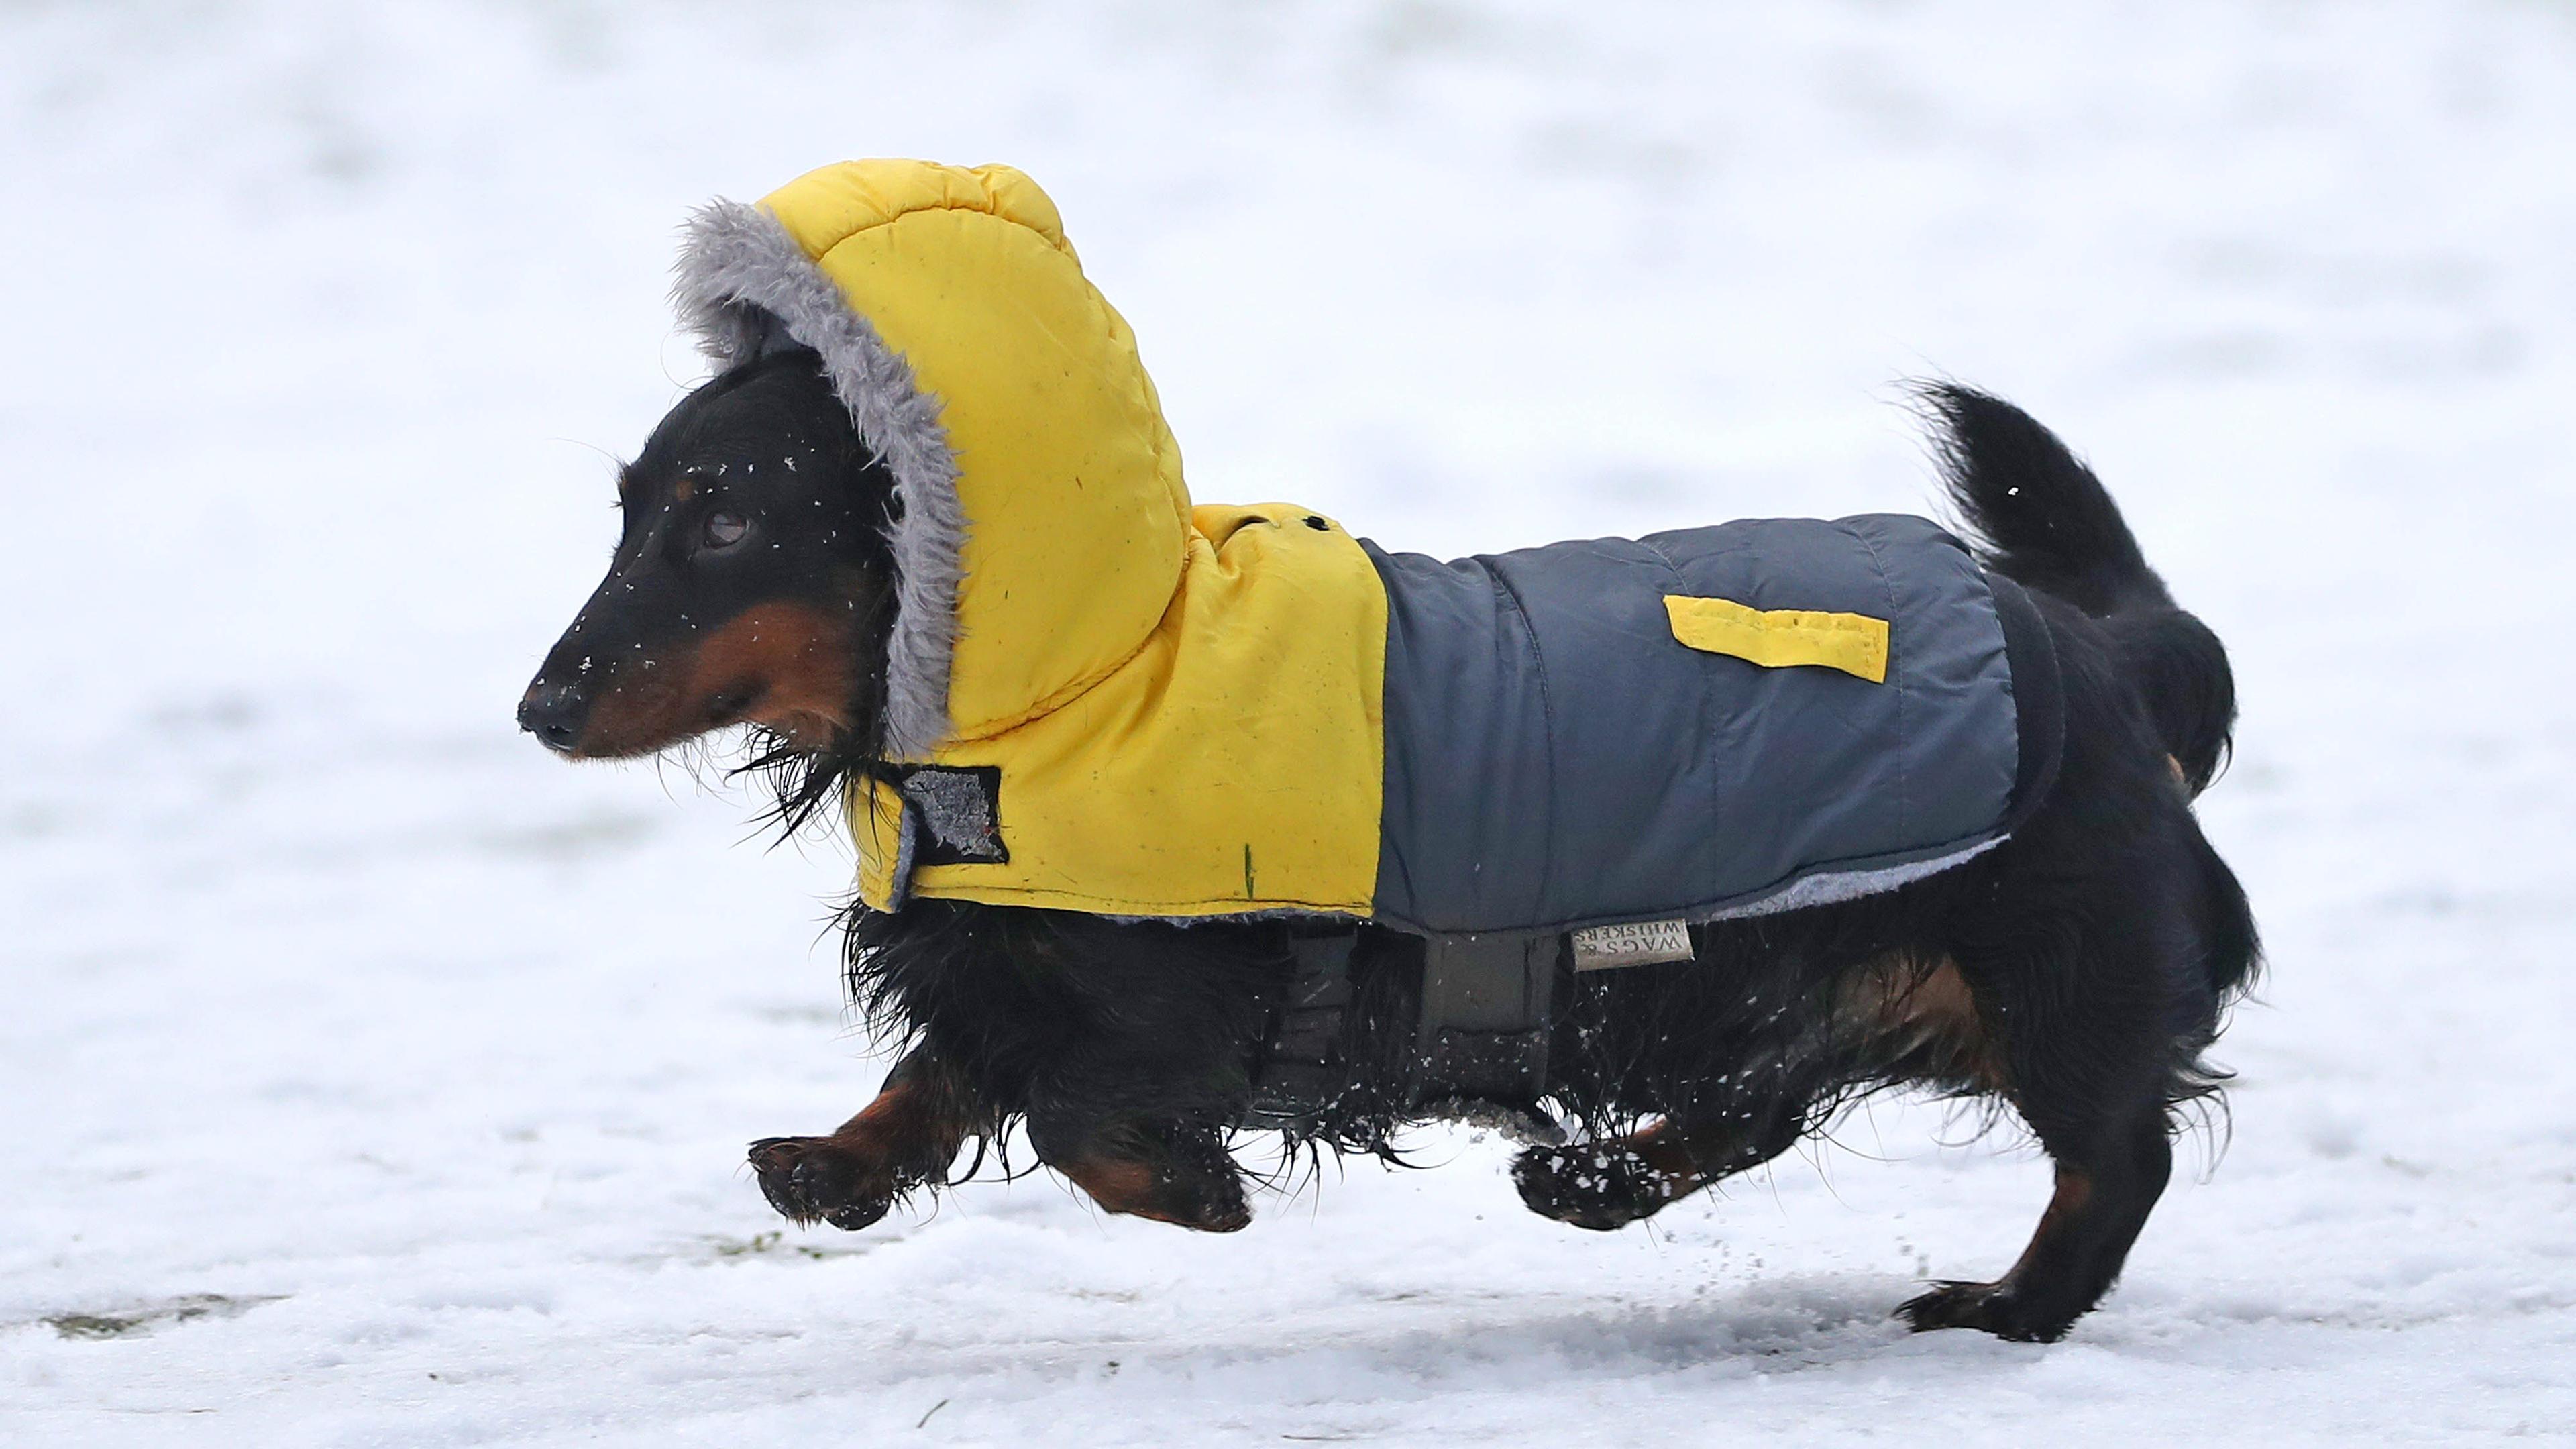 Hunde im Winter: Helfen Hundemantel und Schuhe gegen Kälte? - ZDFheute